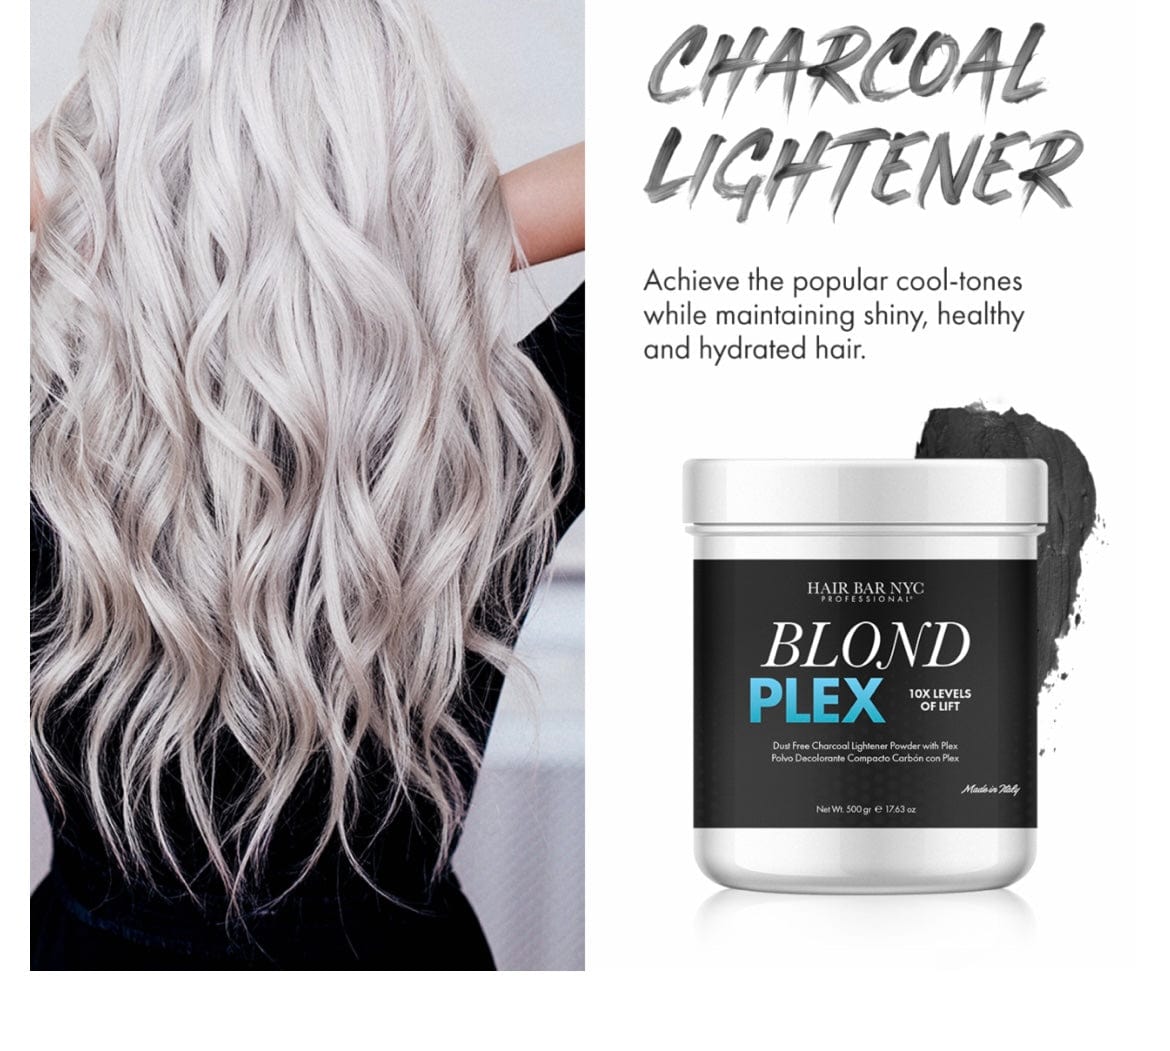 Hair Bleach No Ammonia Blond Plex Violet  or Charcoal 10 Level Lift Bleach